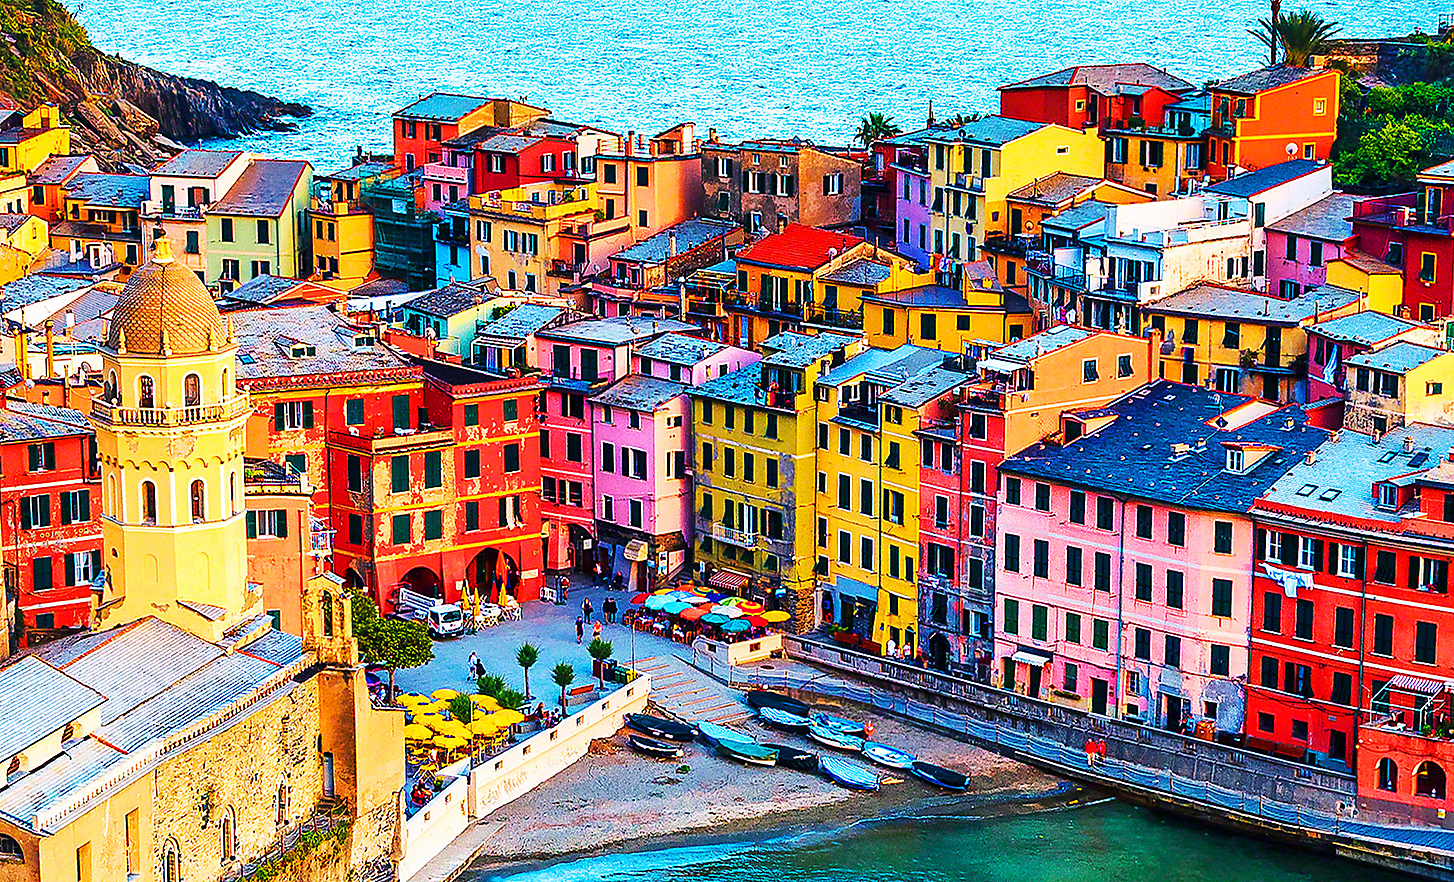 Zonovergoten beeld van een kustplaatsje met gebouwen, cafés en vissersboten in heldere kleuren